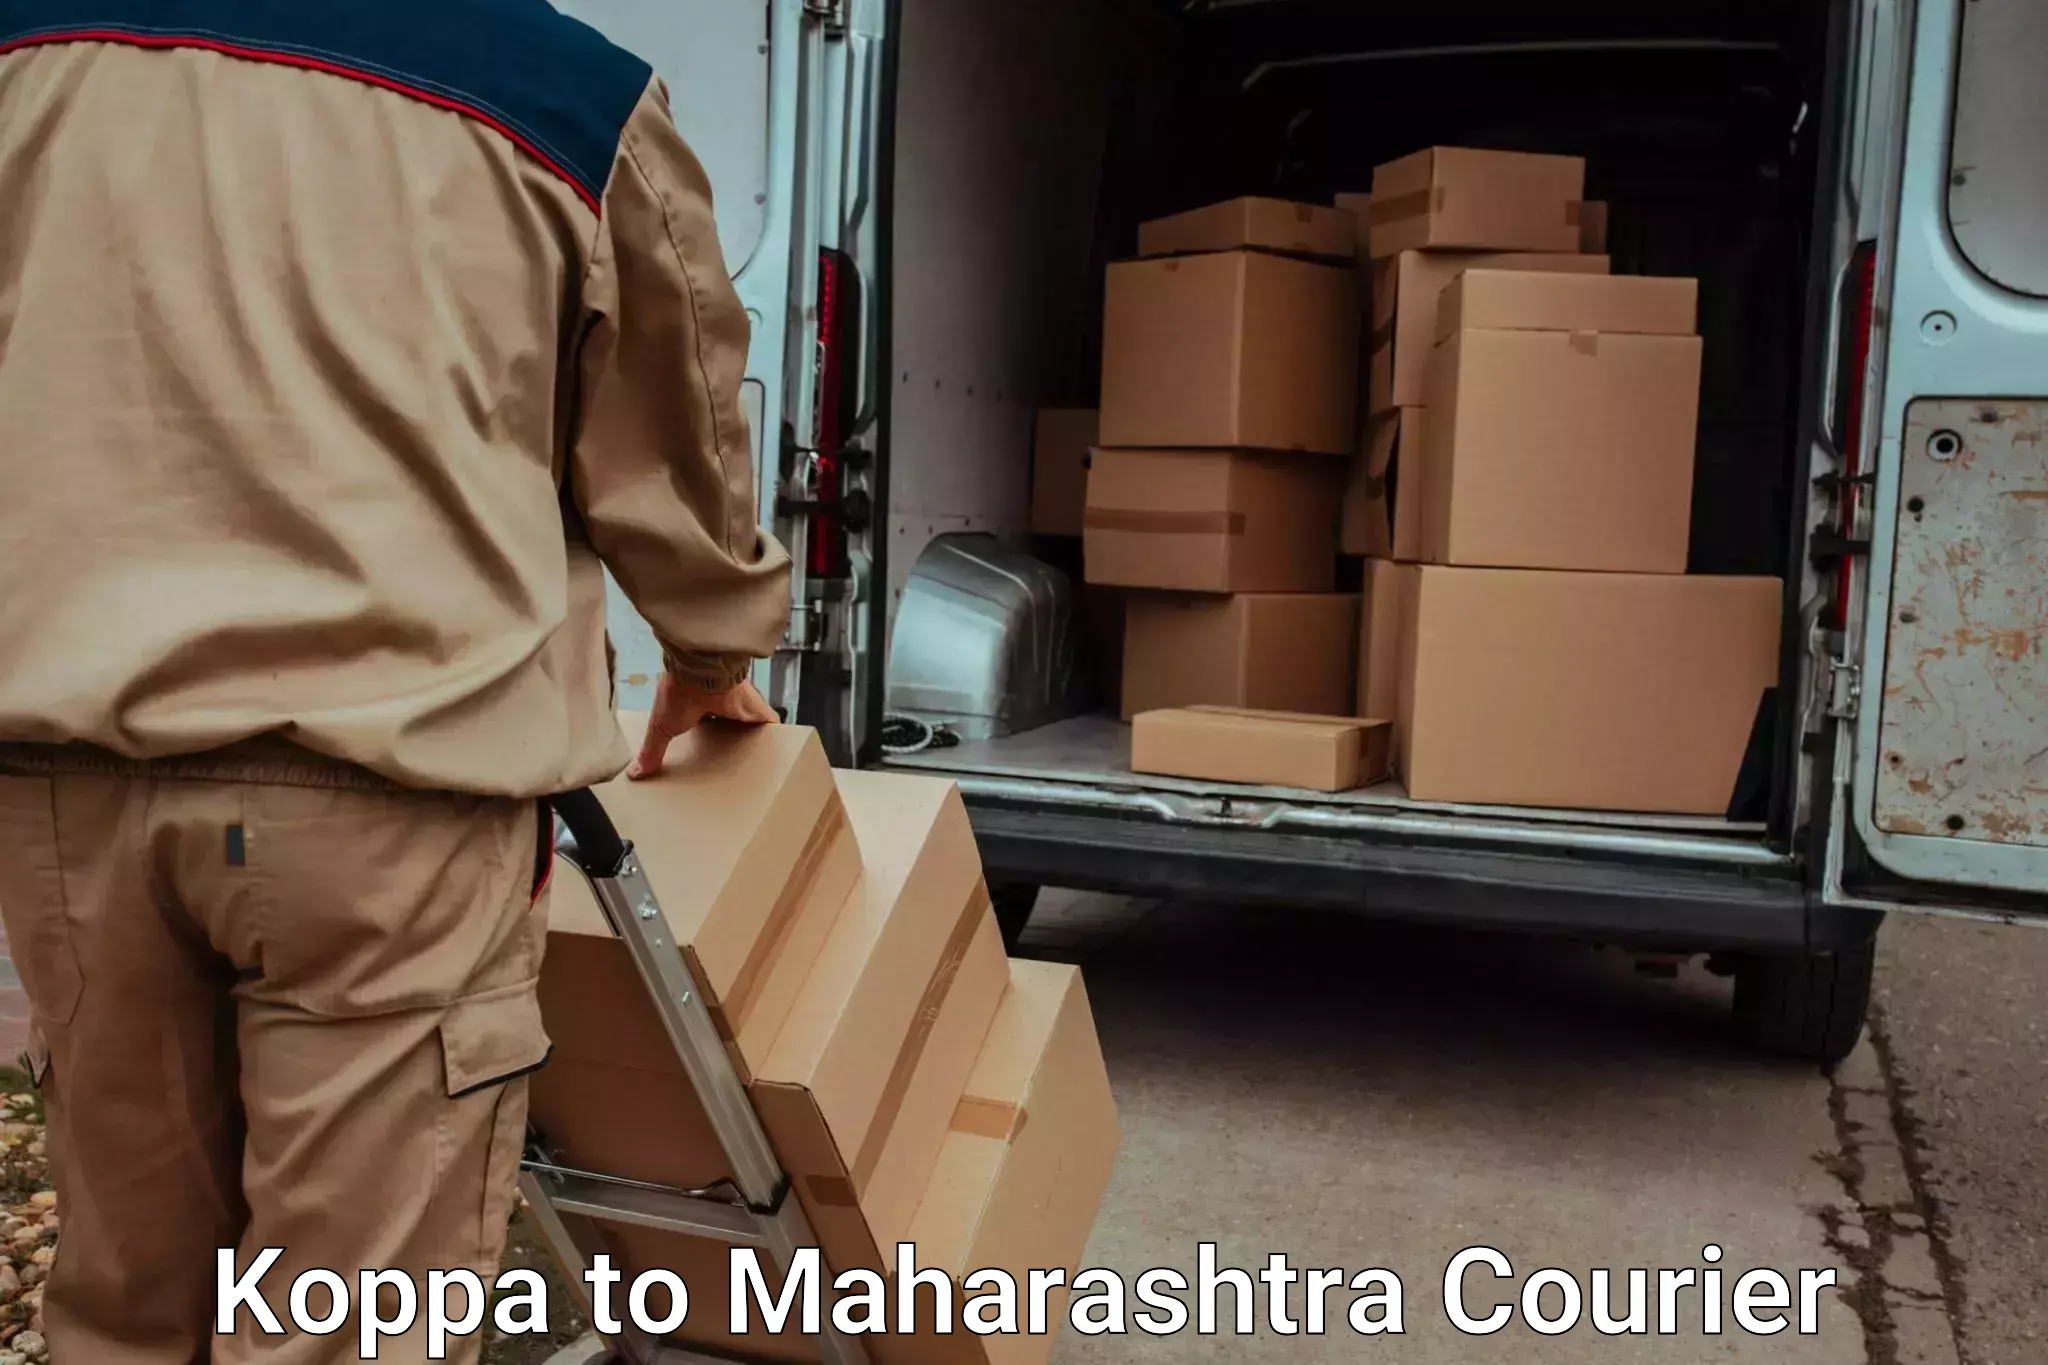 Furniture transport professionals Koppa to Tata Institute of Social Sciences Mumbai